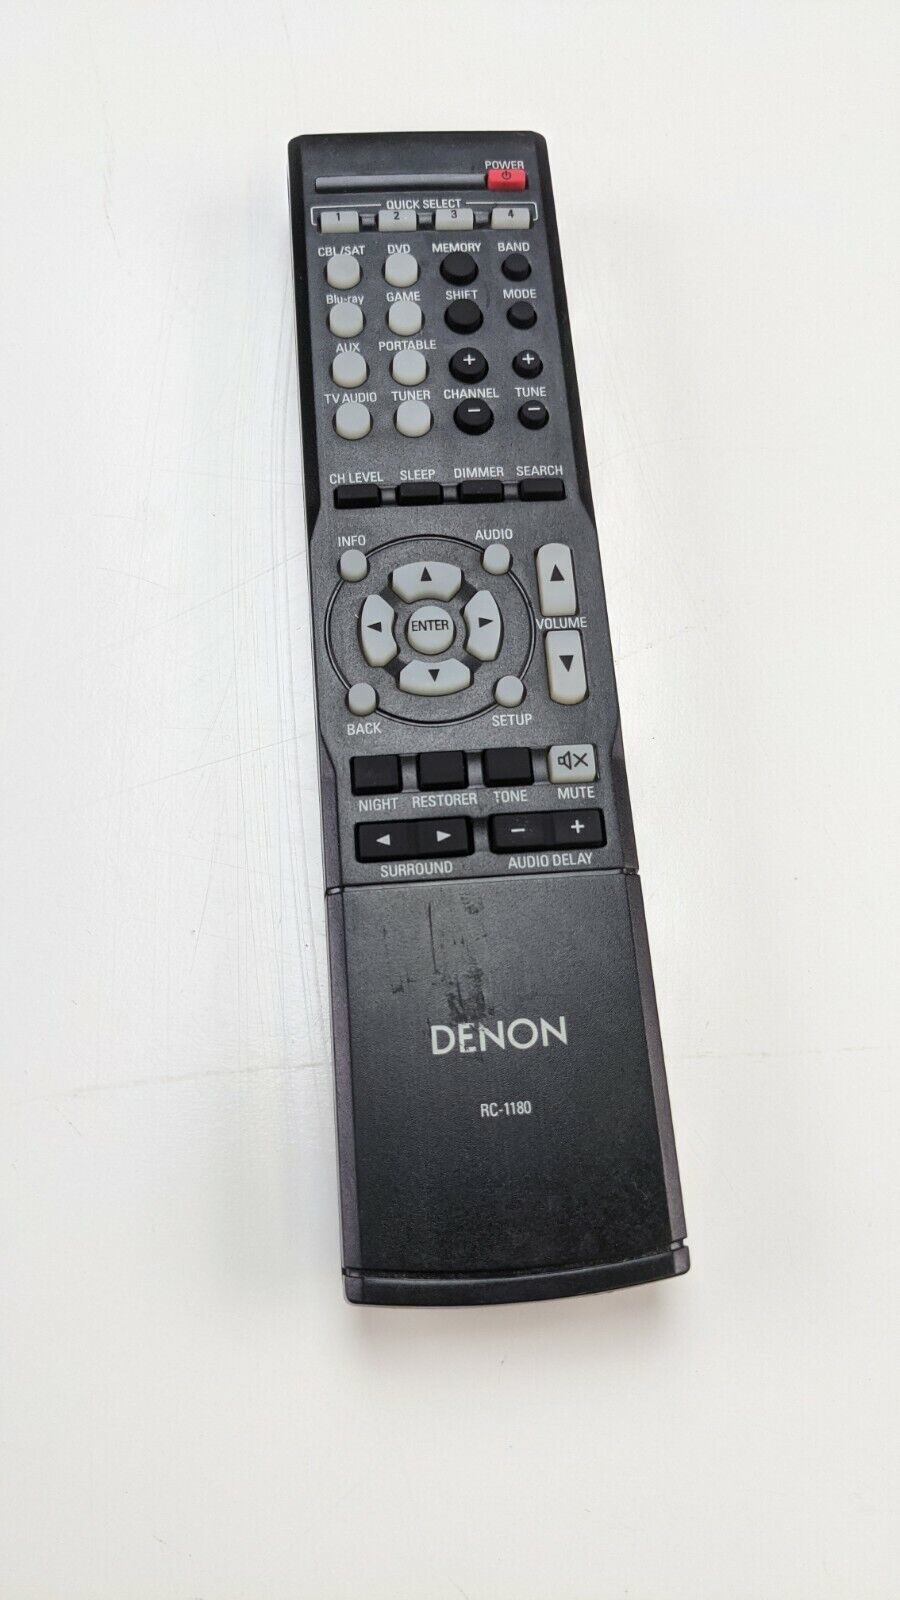 Primary image for Genuine Denon Home Theater Remote Control RC-1196 Compatible 1157 1181 1180 1168